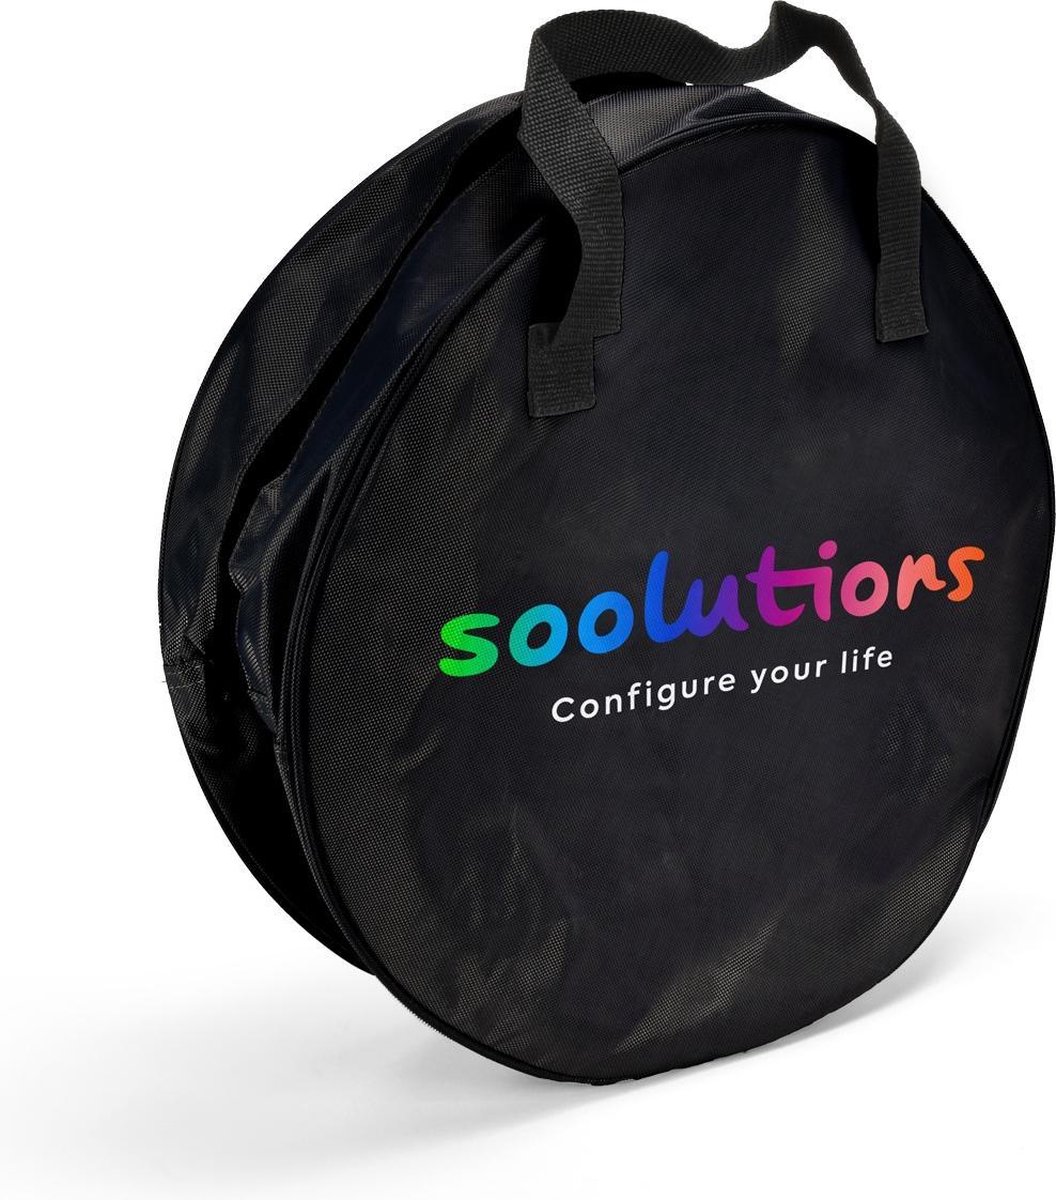 Soolutions Laadkabel tas Zwart met Soolutions logo